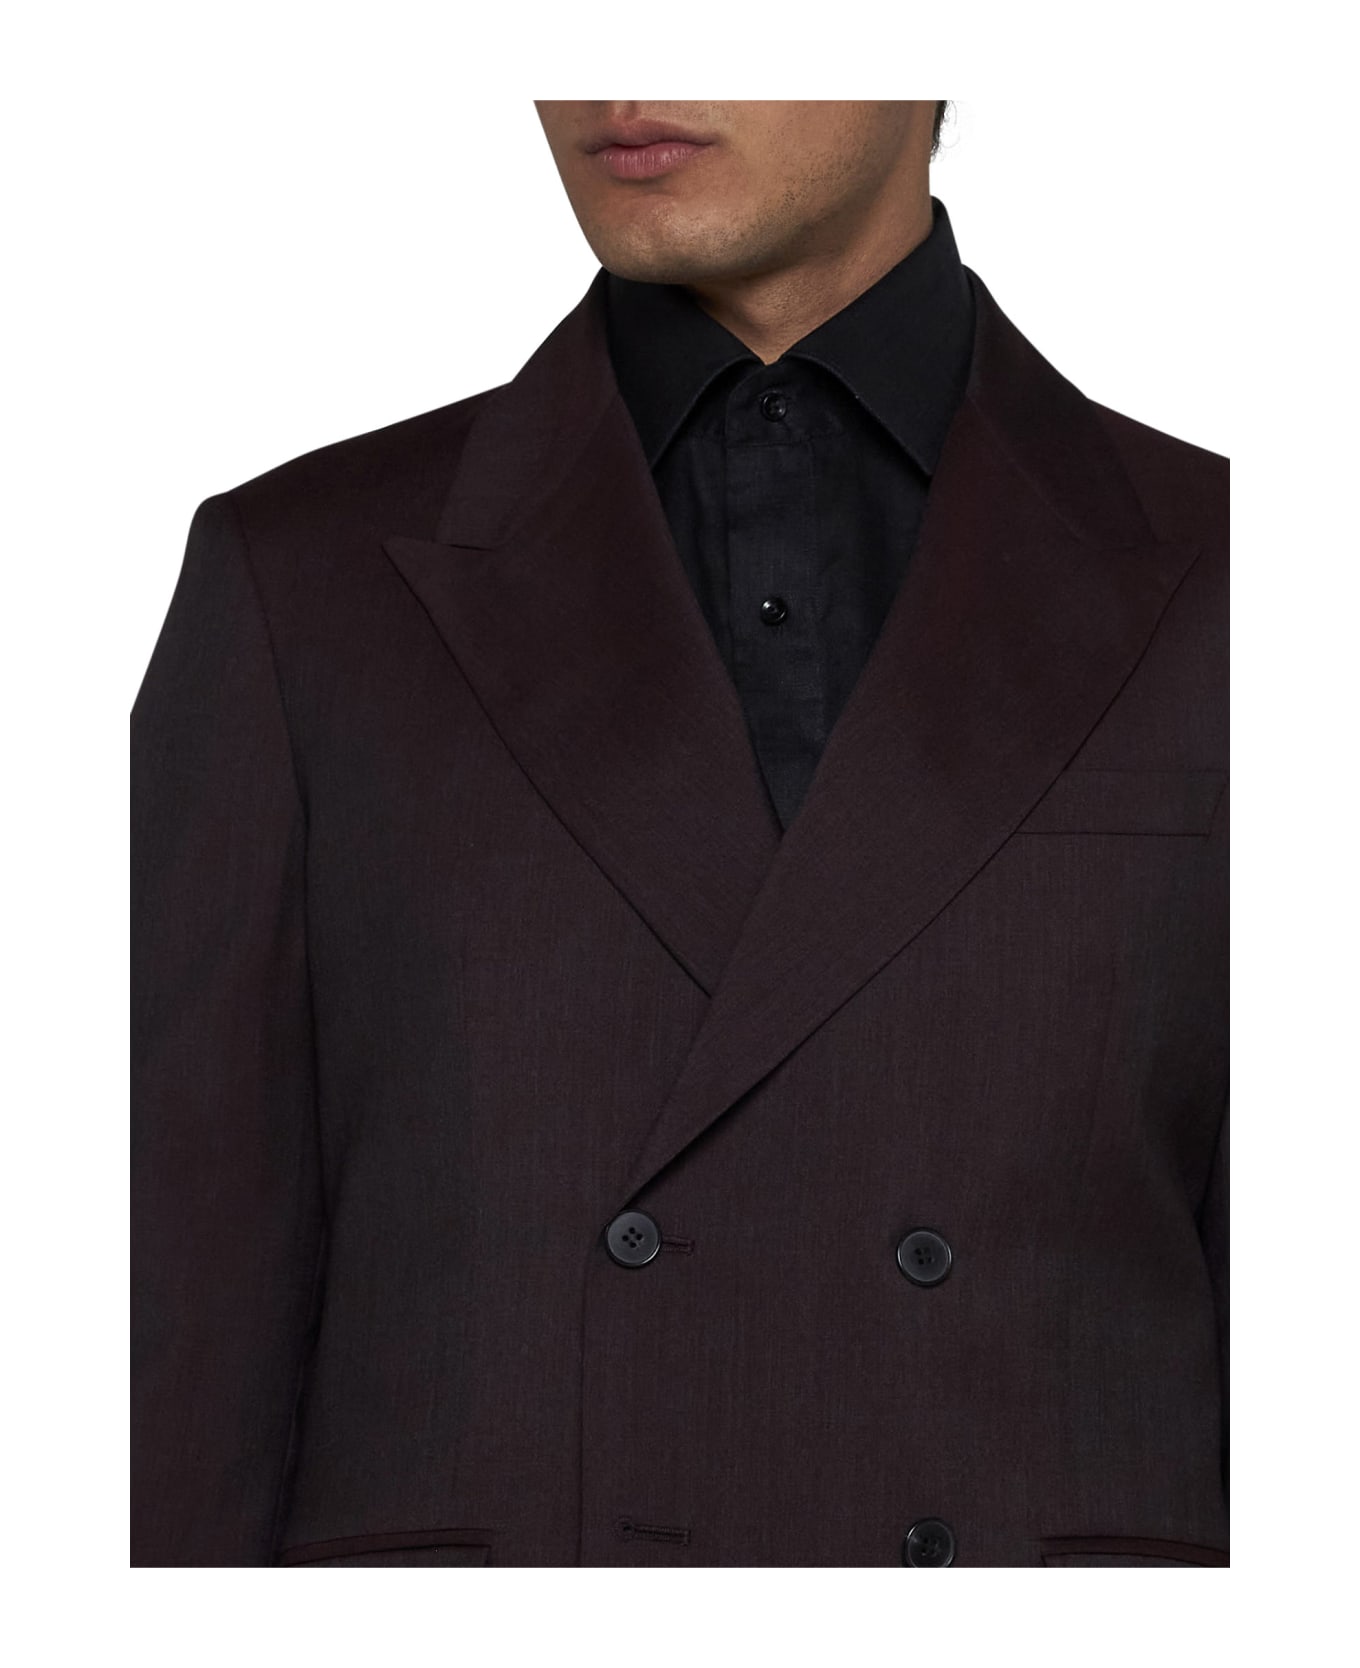 Low Brand Suit - Black rum スーツ